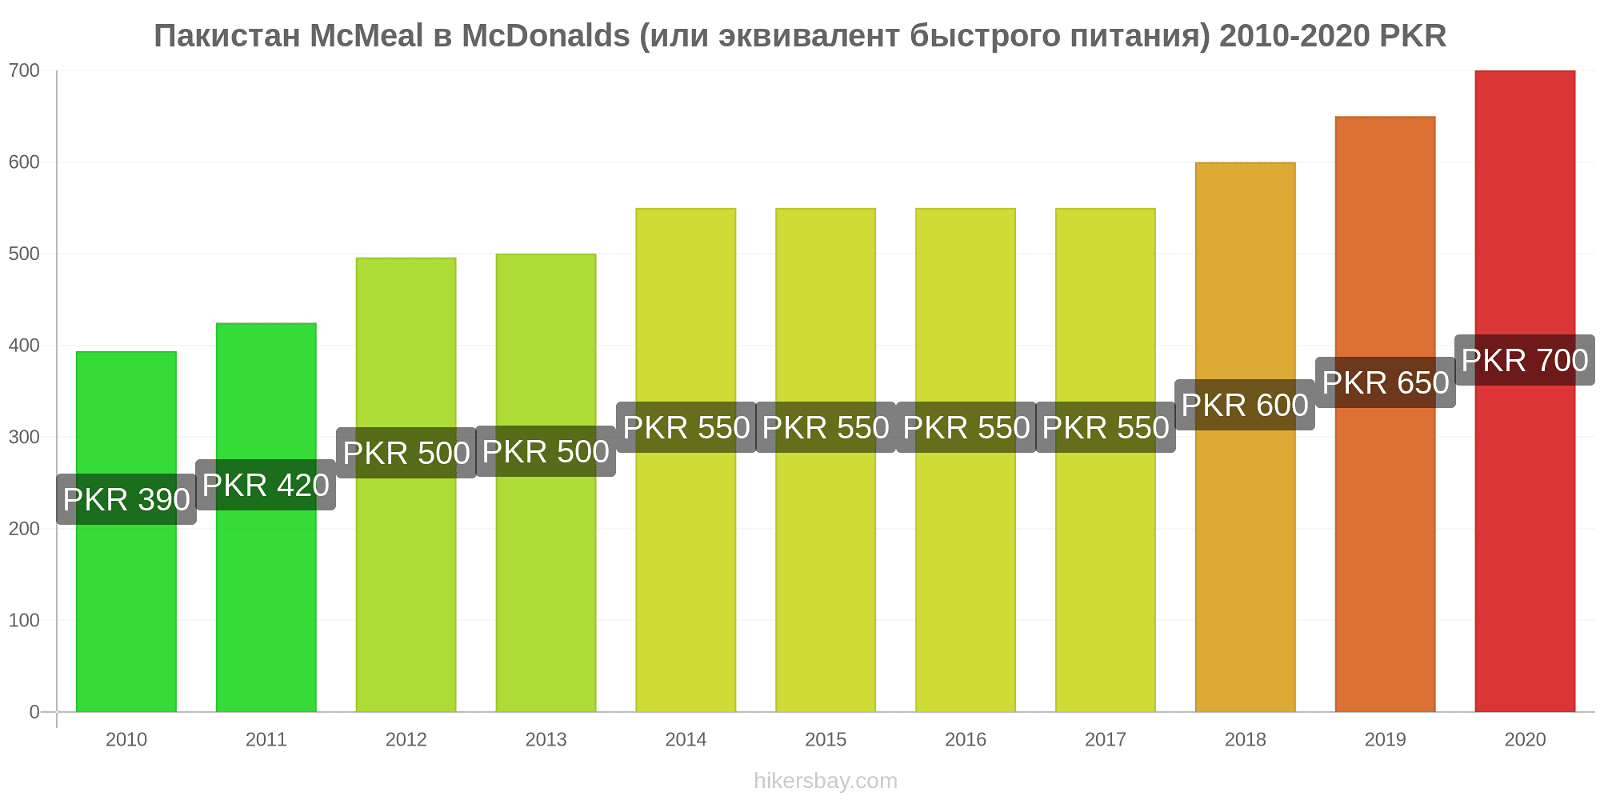 Пакистан изменения цен McMeal в McDonalds (или эквивалент быстрого питания) hikersbay.com